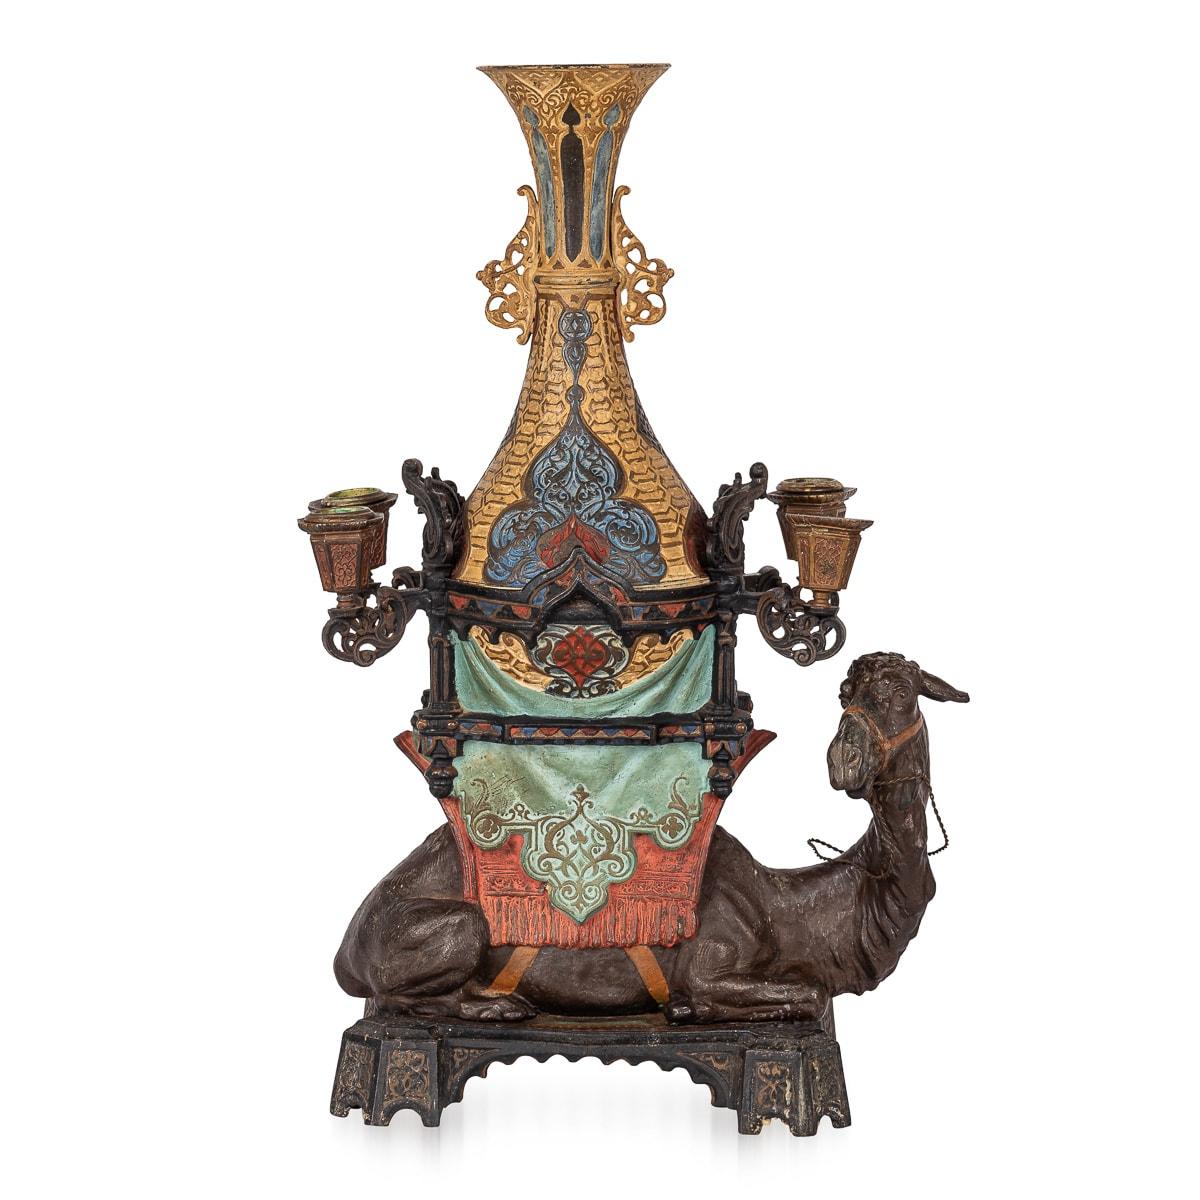 Antiker österreichischer Kandelaber des späten 19. Jahrhunderts, verziert und ungewöhnlich, aus massivem Metall, durchgehend kalt bemalt. Das Design zeigt ein majestätisches, kniendes Kamel, das eine große Vase trägt, die mit vier Kerzenhaltern an